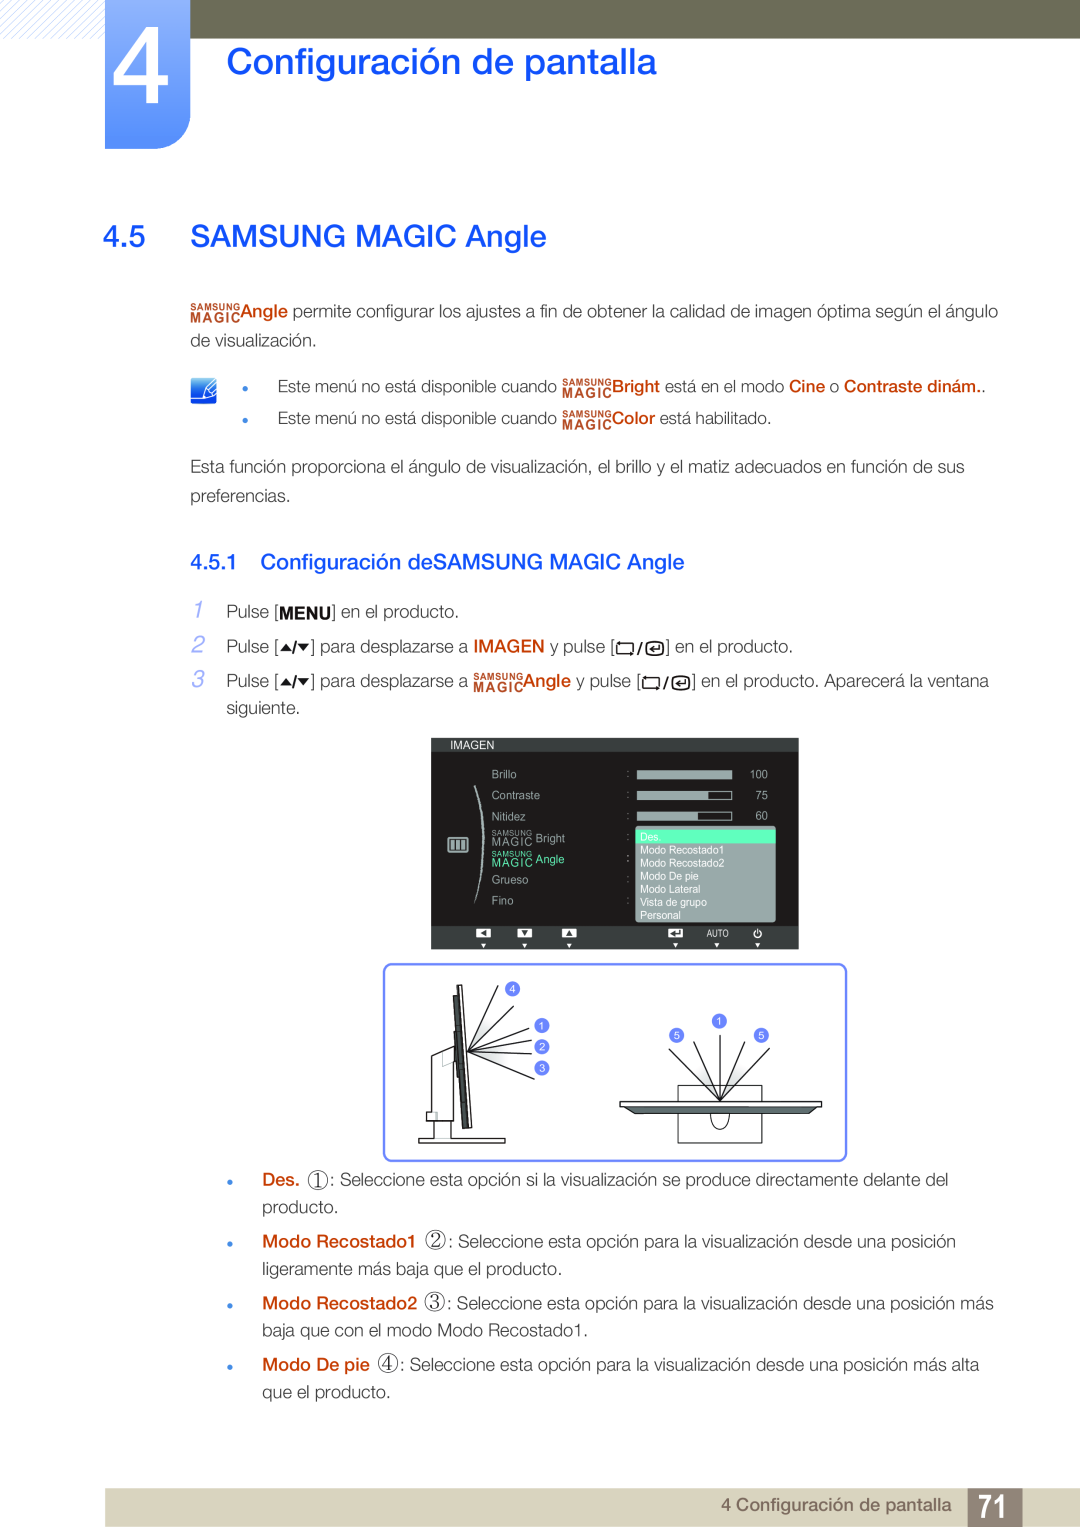 Samsung LF22TSCTBAN/EN, LF19TSCTBAN/EN, LF24TSCTBAN/EN Configuración deSAMSUNG MAGIC Angle, Configuración de pantalla 